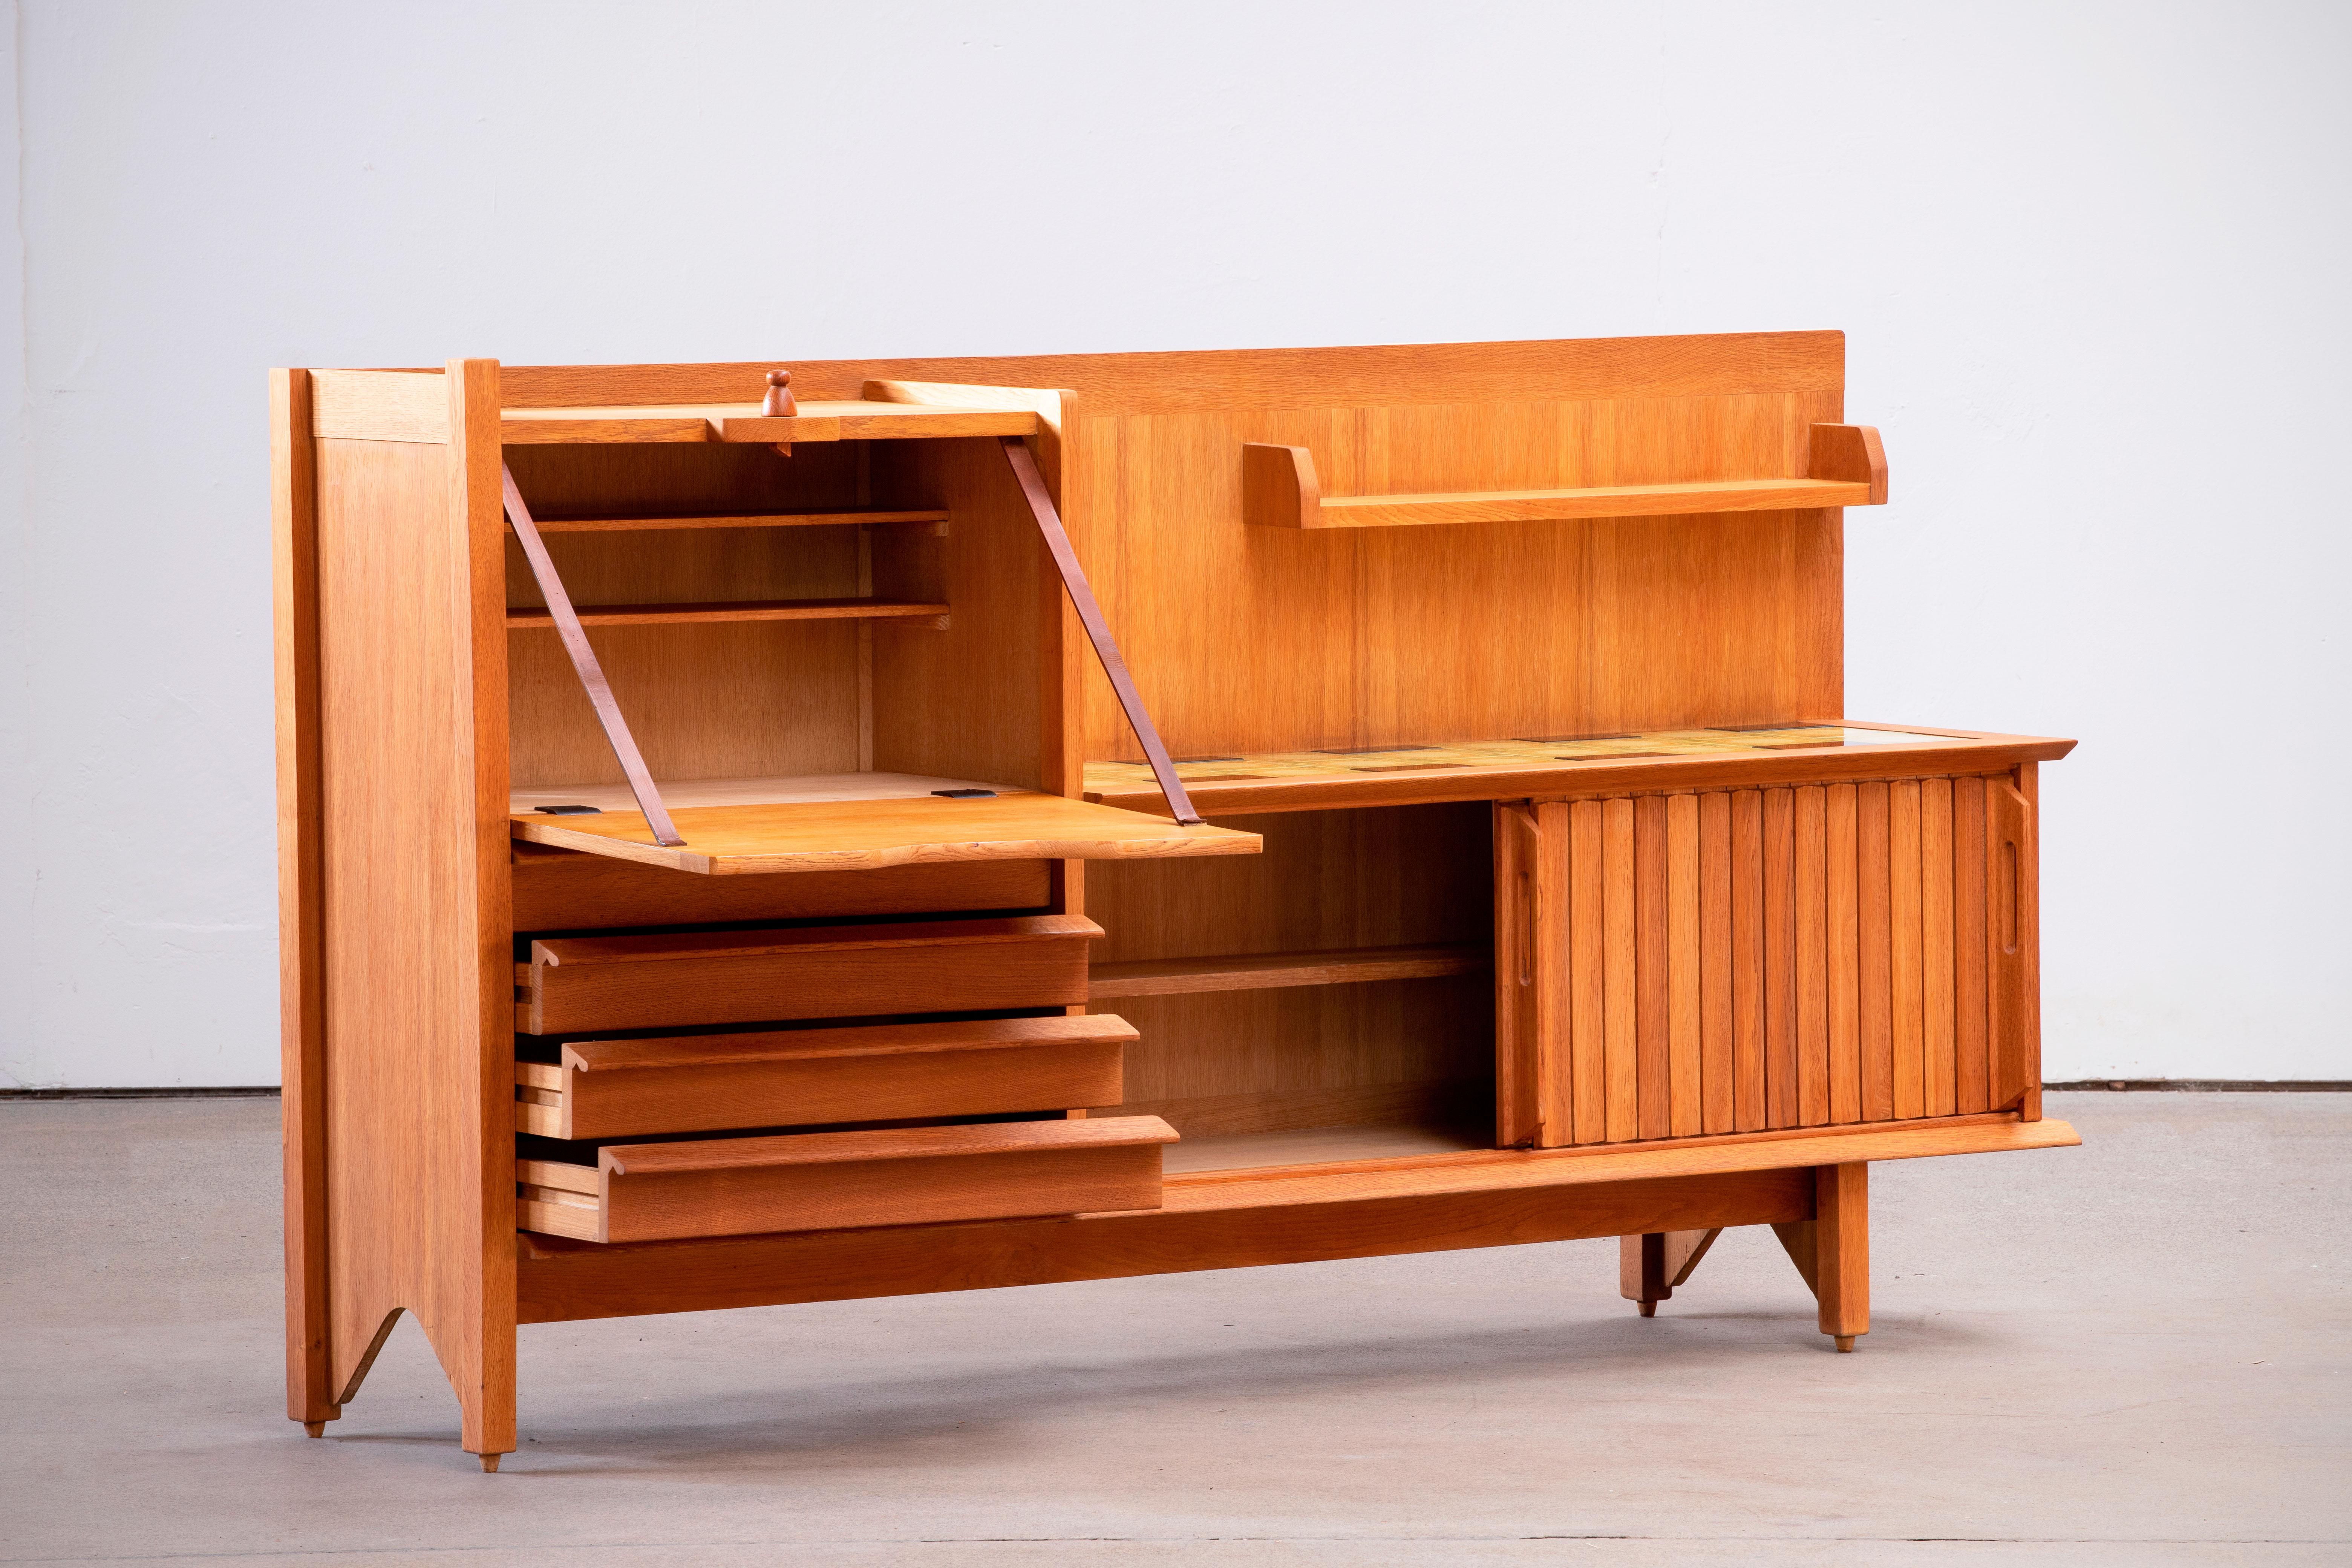 Ce meuble caractéristique, buffet en chêne massif, est conçu par le duo de designers français Jacques Chambron (1914-2001) et Robert Guillerme (1913-1990). Elle comporte deux portes coulissantes, une porte coulissante sur le côté gauche et quatre